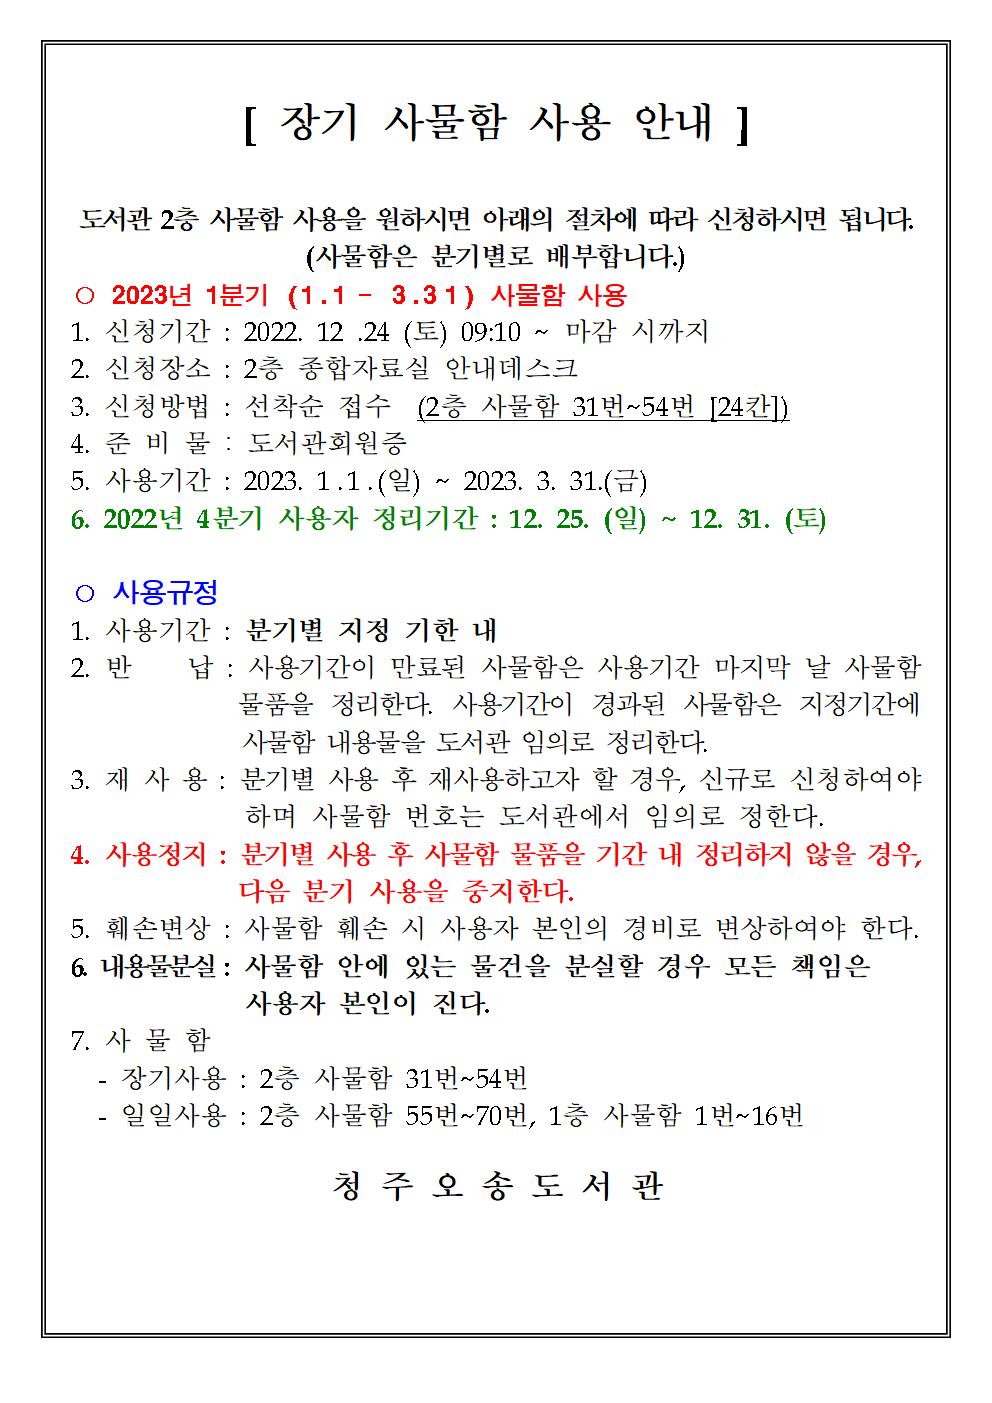 <청주오송도서관>2023년 1분기( 1월~3월 ) 장기사물함 신청안내